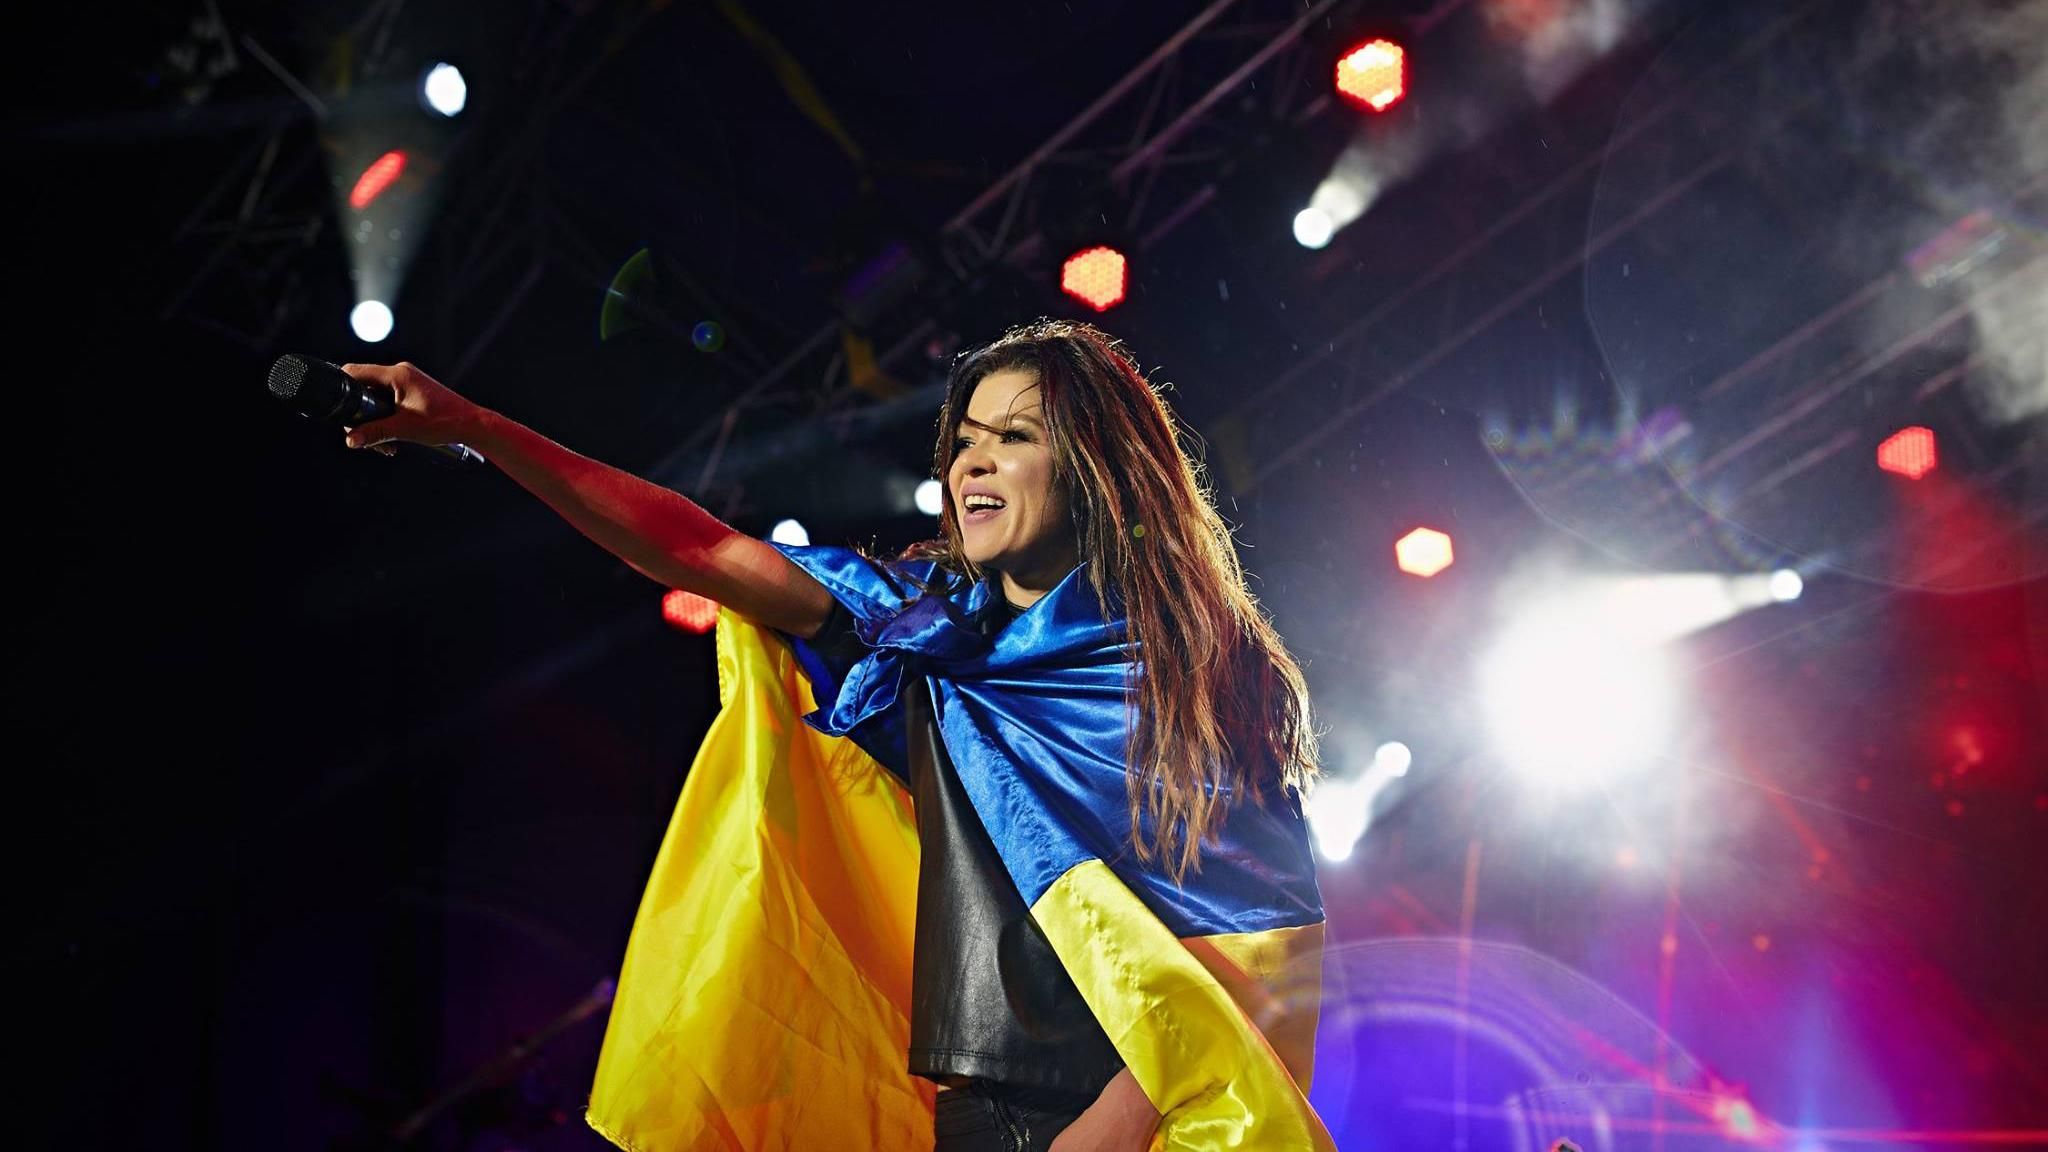 Руслана заспівала старовинною манерою співу на концерті: зворушливе відео